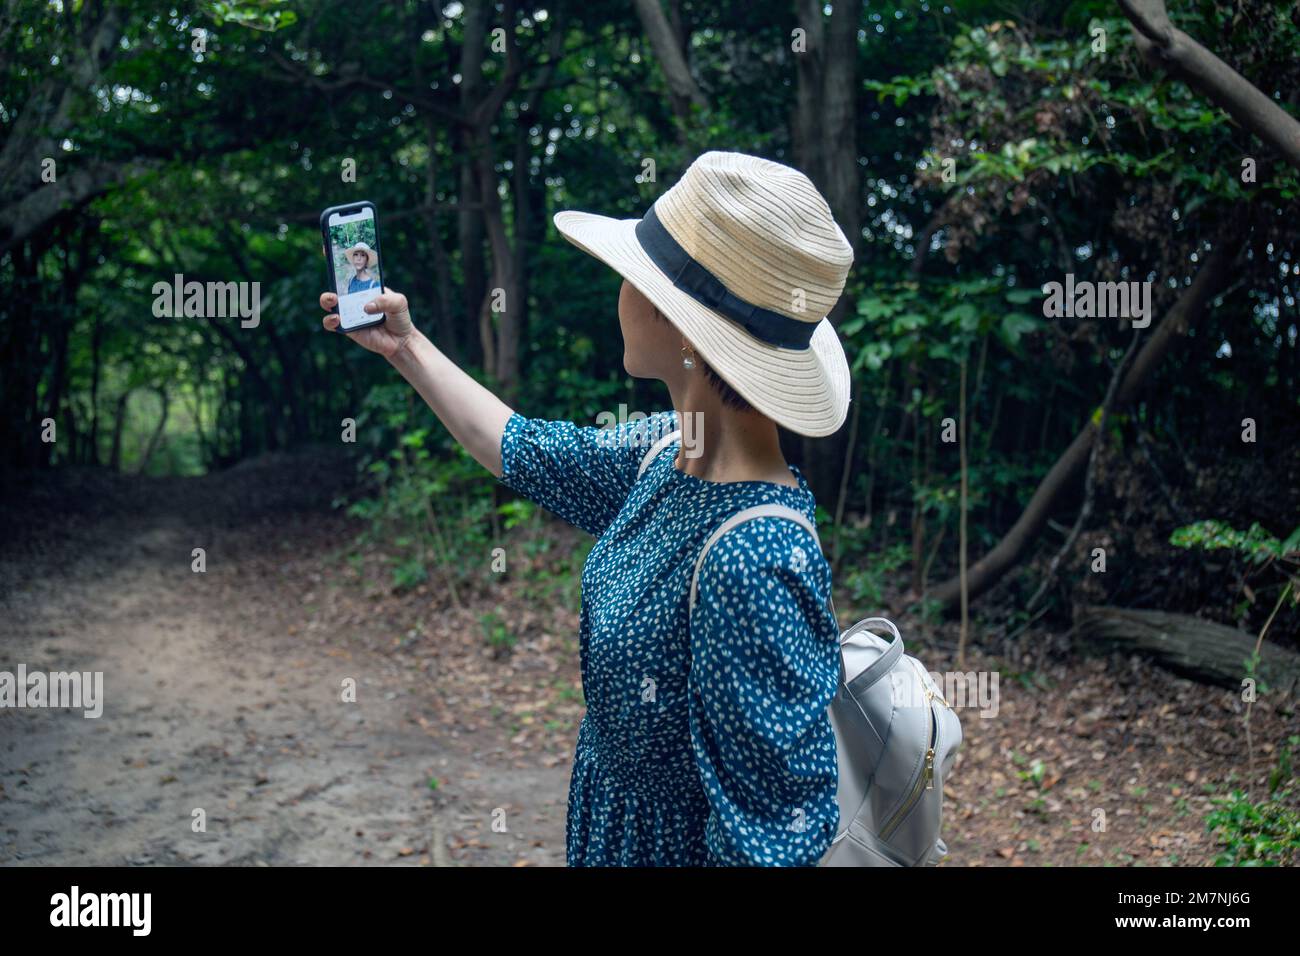 Une femme japonaise mûre dans un chapeau de paille et une robe bleue prenant un selfie avec un téléphone portable. Banque D'Images